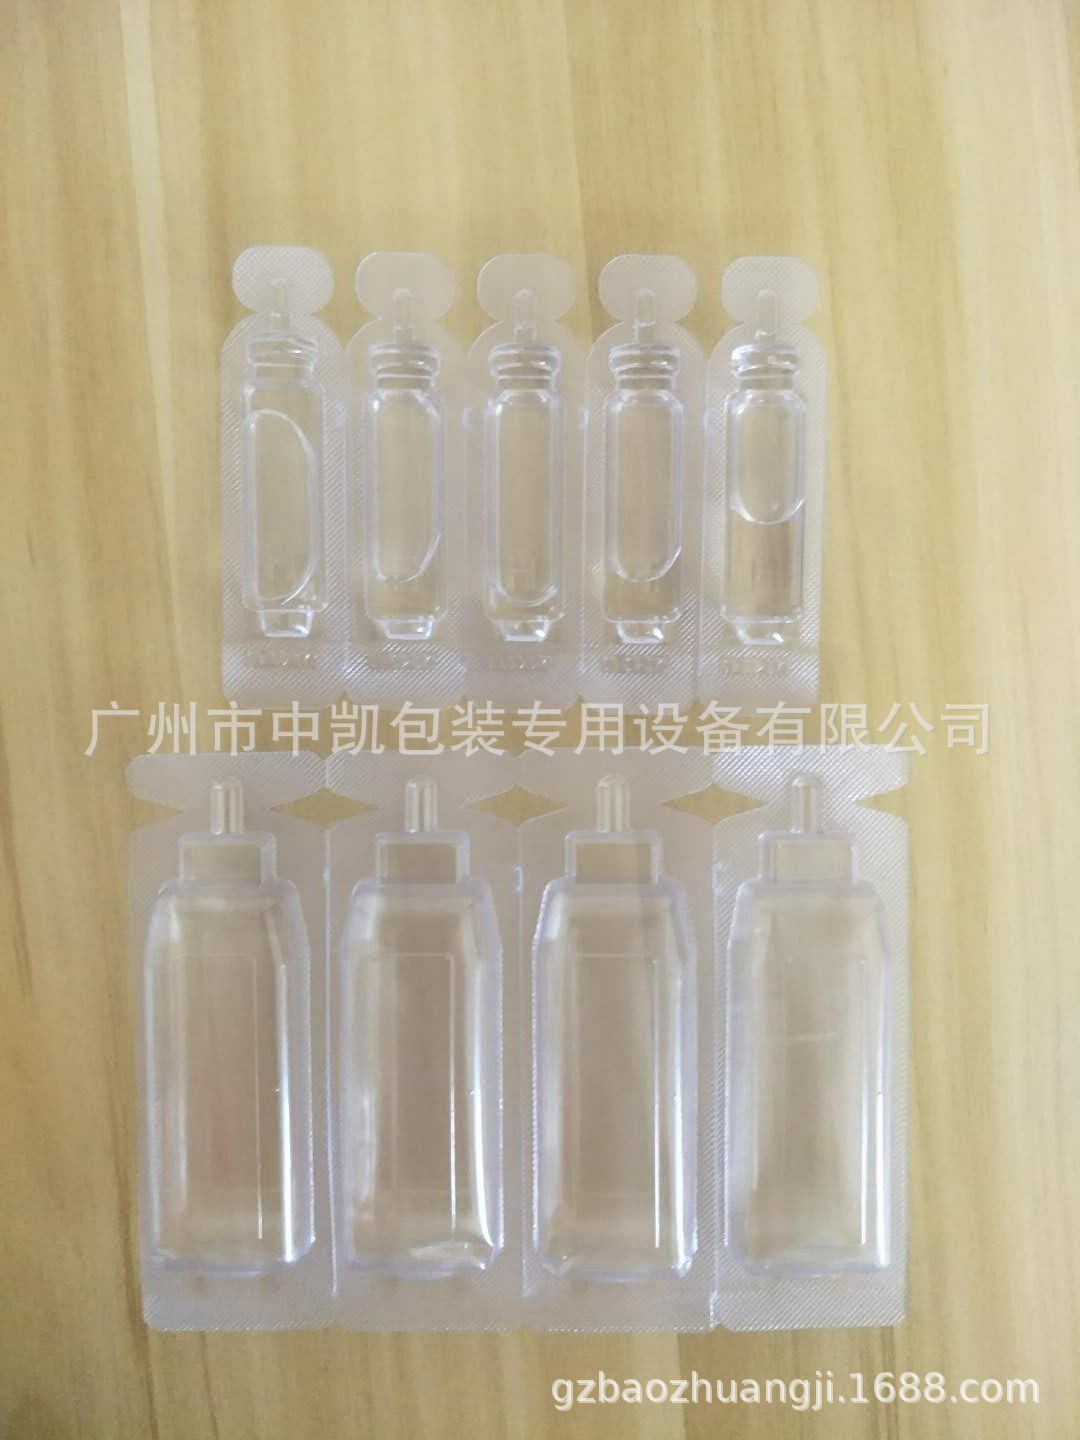 【厂家】广州护肤水/果冻/汽车香水液体泡罩机 欢迎来公司看机示例图13